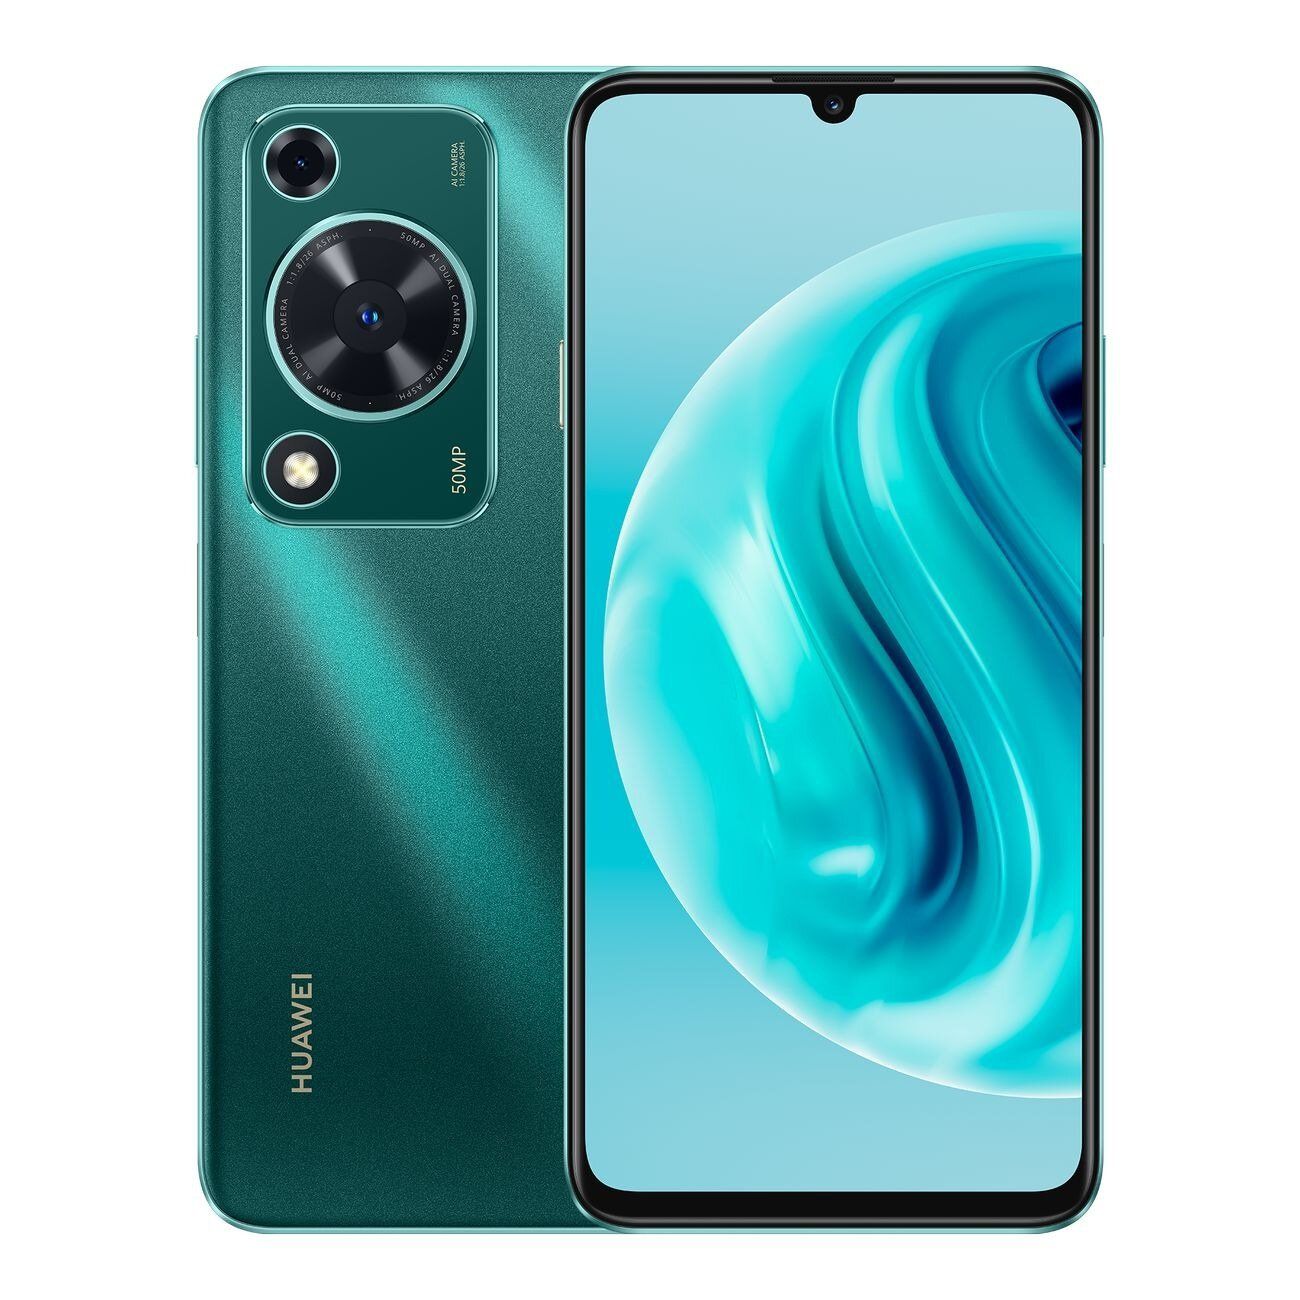 Смартфон Huawei Nova Y72 8+128 Gb Green 51097SEB гидрогелевая пленка с вырезом под камеру для виво у72 5джи индийская версия vivo y72 5g india